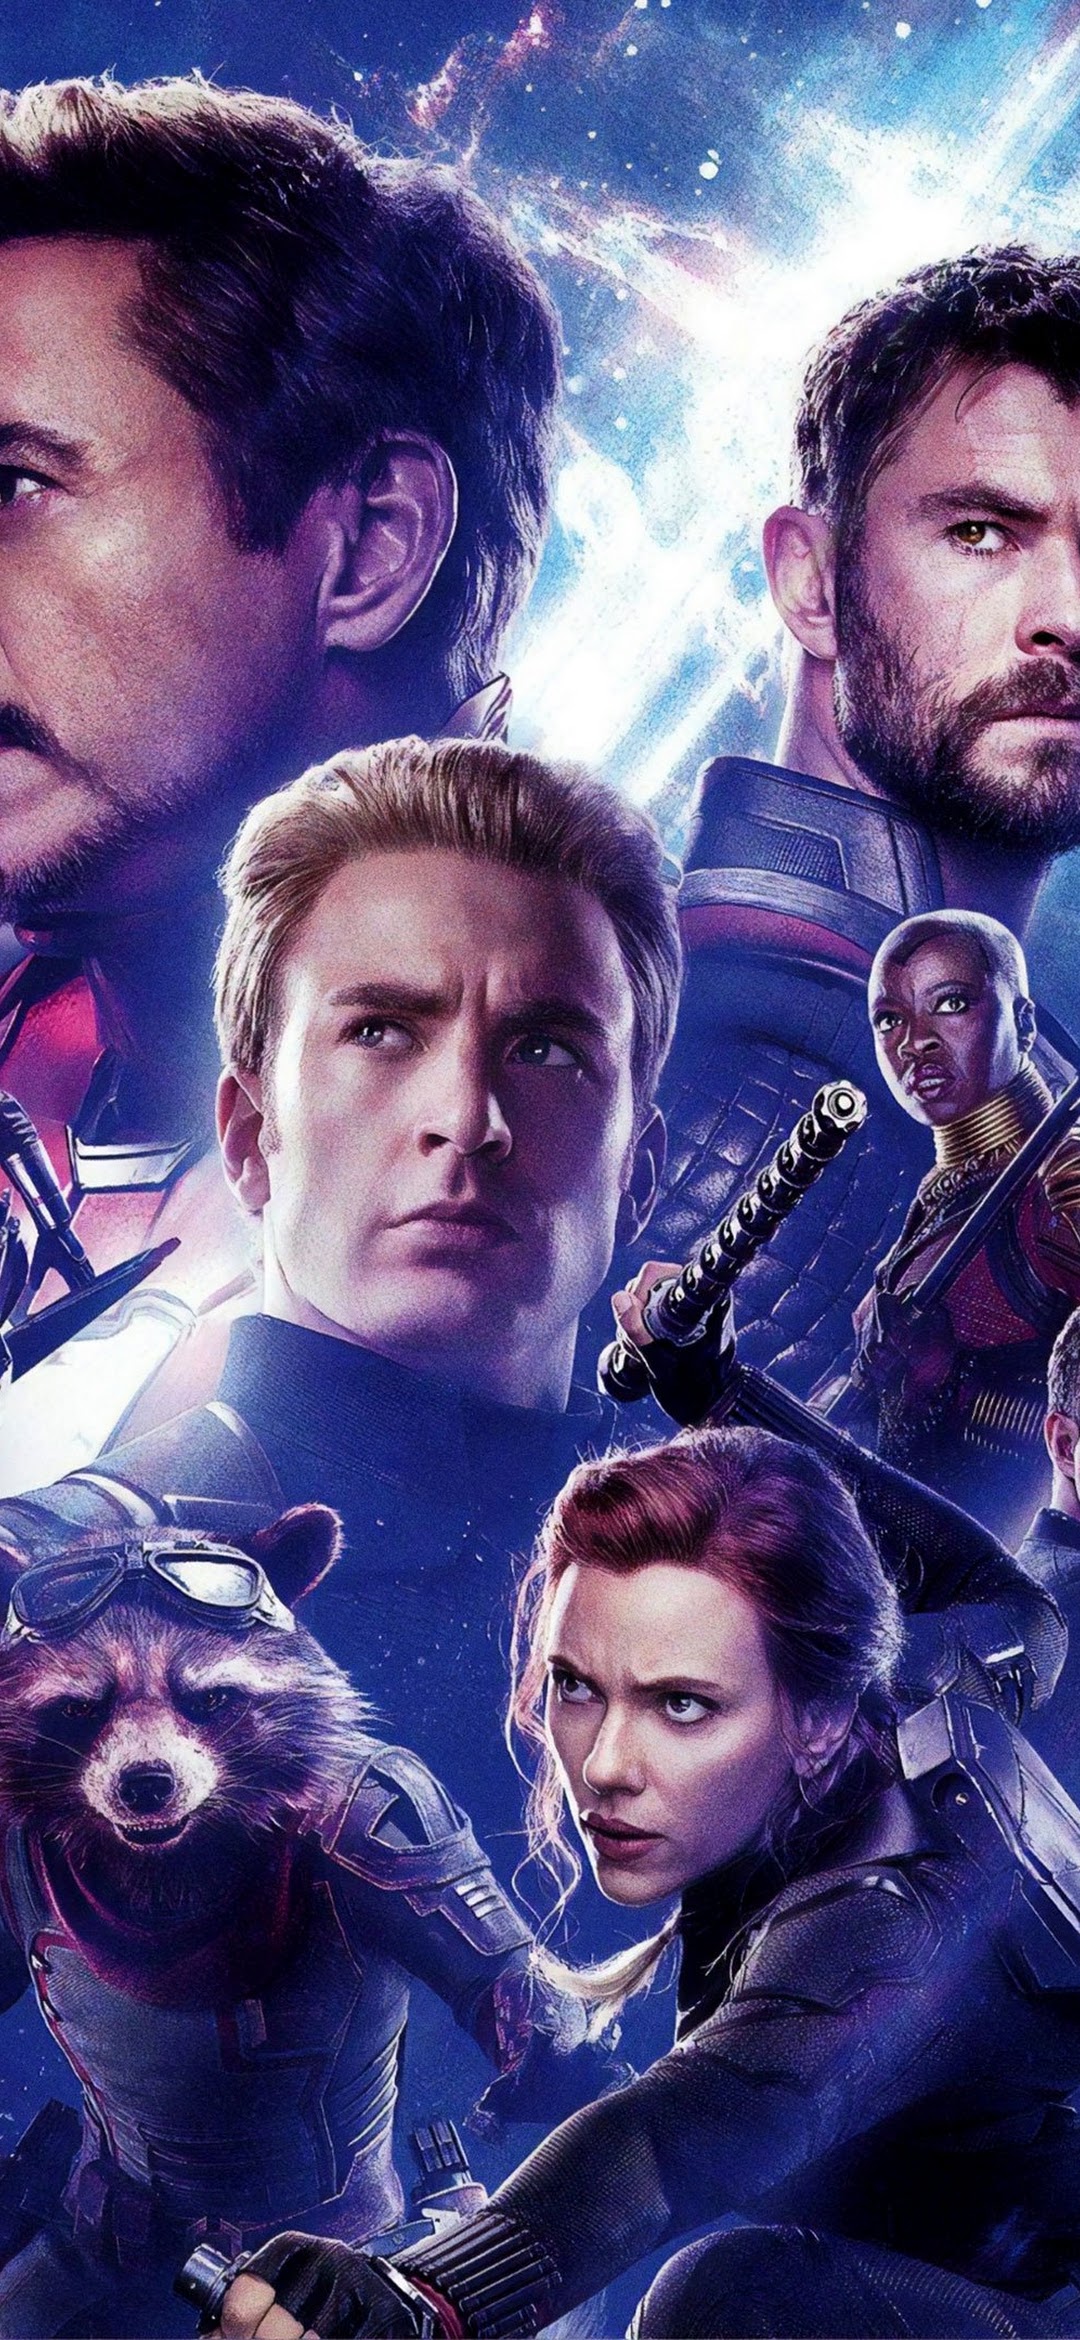 Avengers Endgame Cast Characters 4k Wallpaper 59